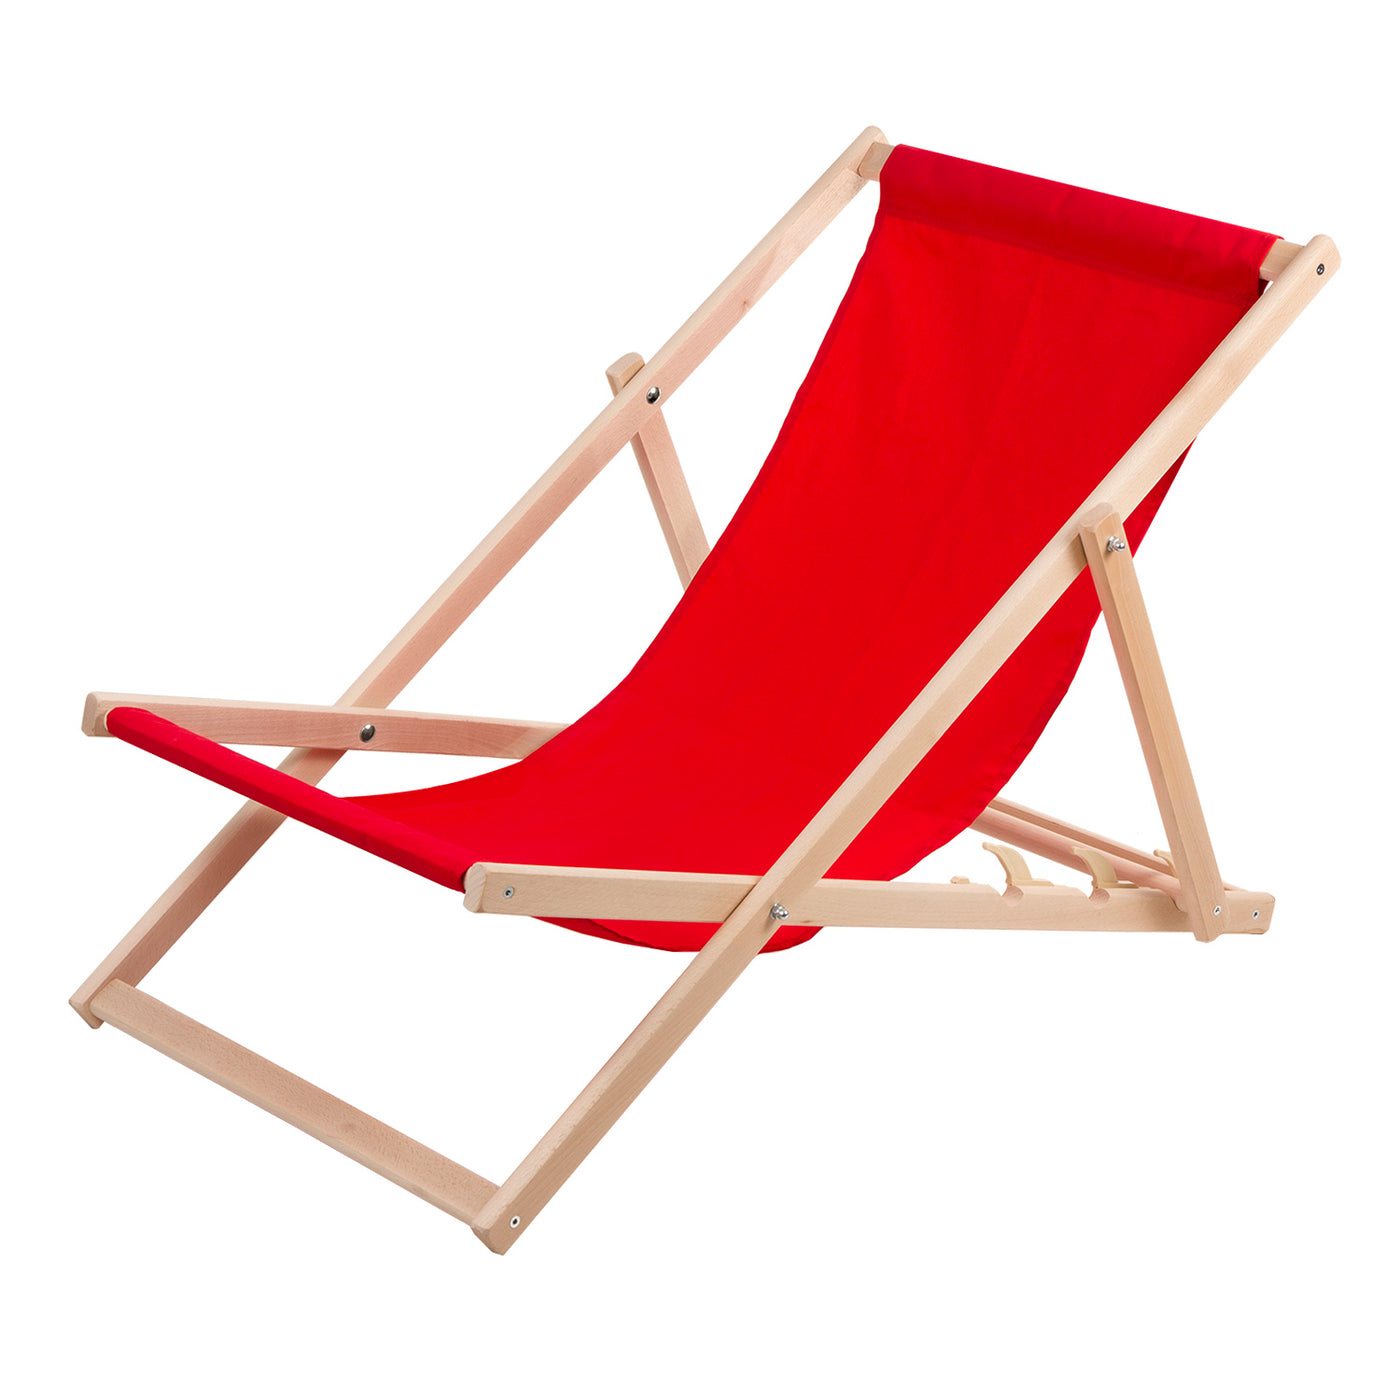 Leżak z drewna bukowego Woodok, czerwony, idealne na plażę, balkon, taras